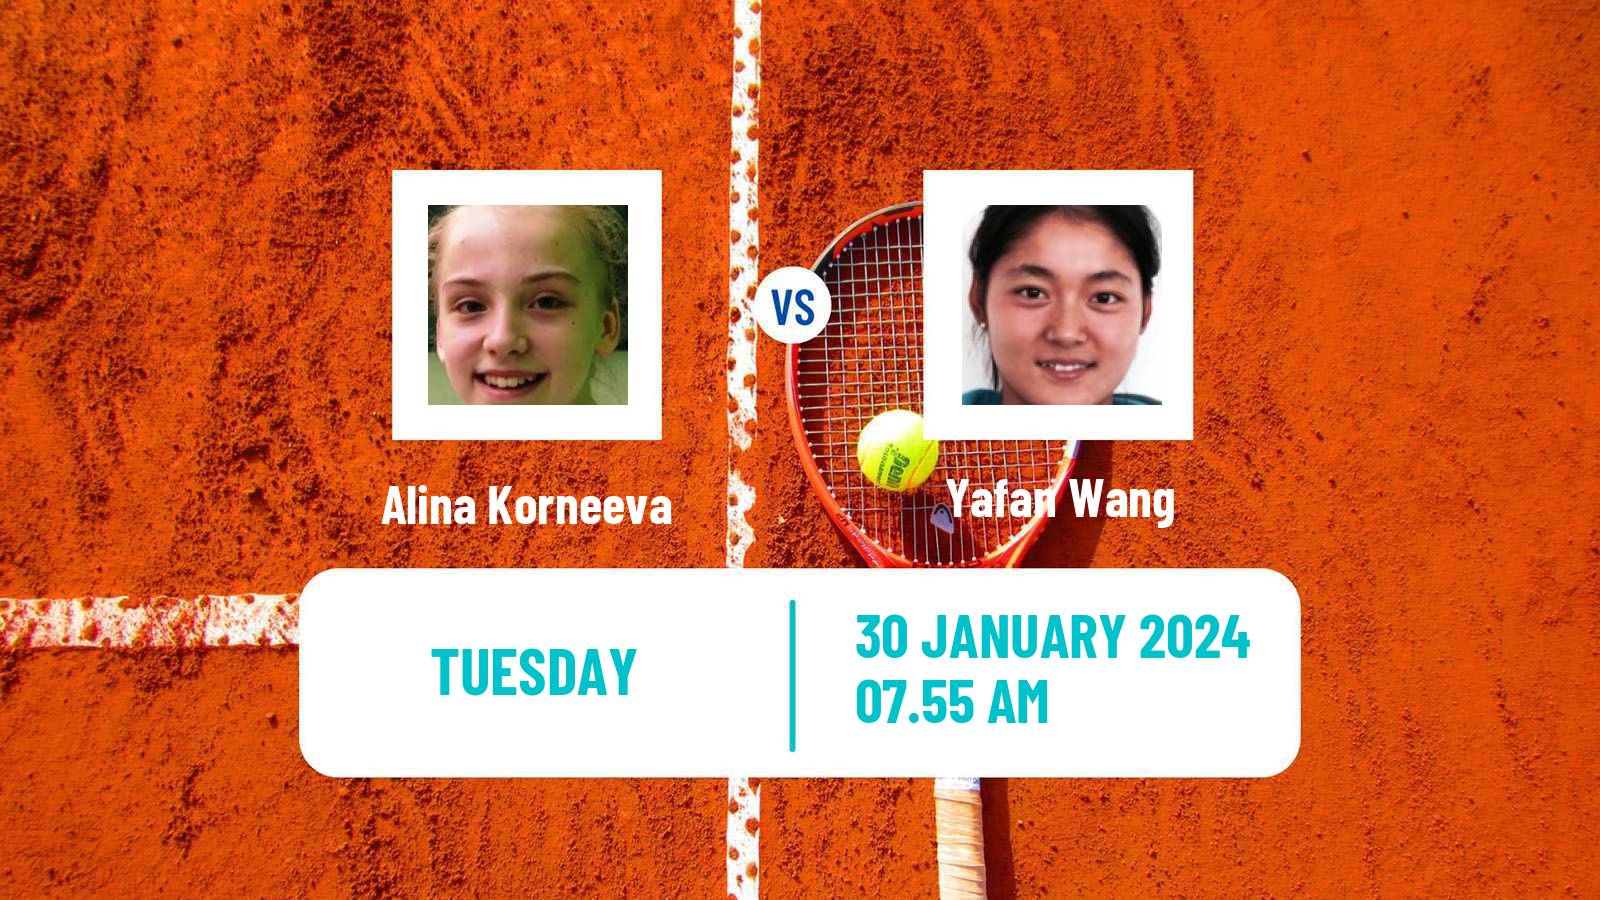 Tennis WTA Hua Hin Alina Korneeva - Yafan Wang